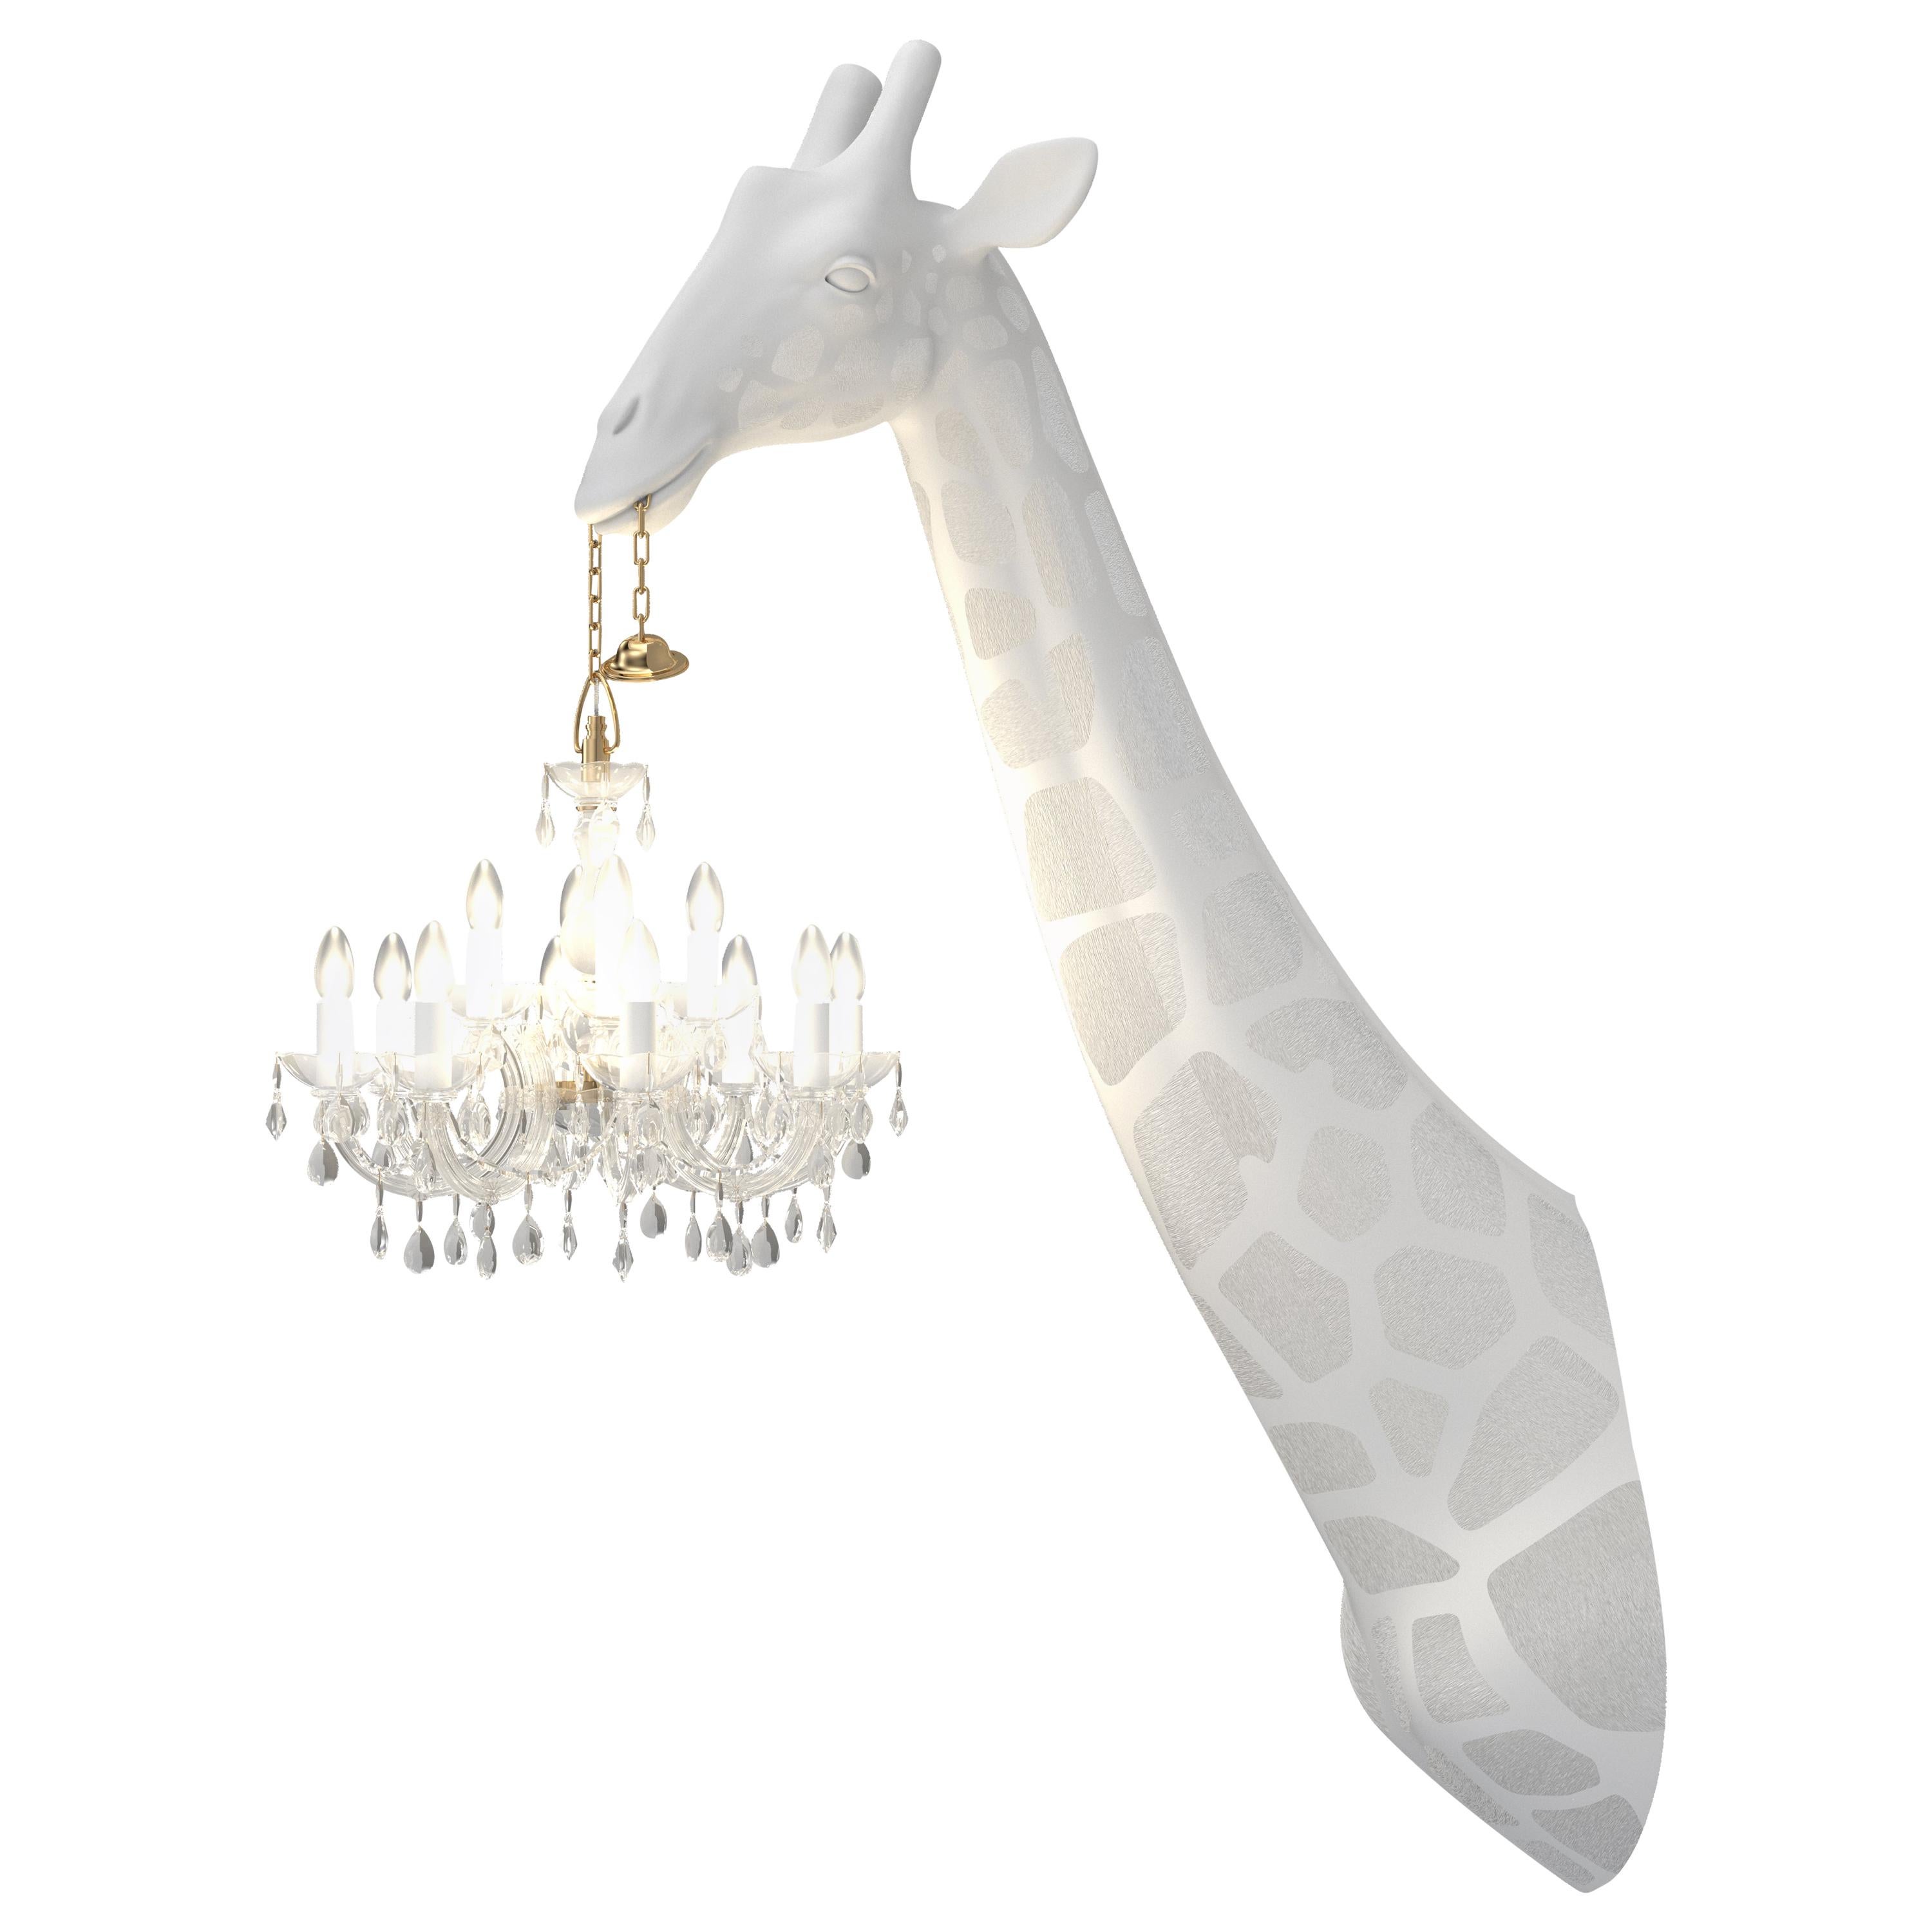 For Sale: White Modern 5.5 Foot White or Black Giraffe Wall Lamp Sconce Chandalier